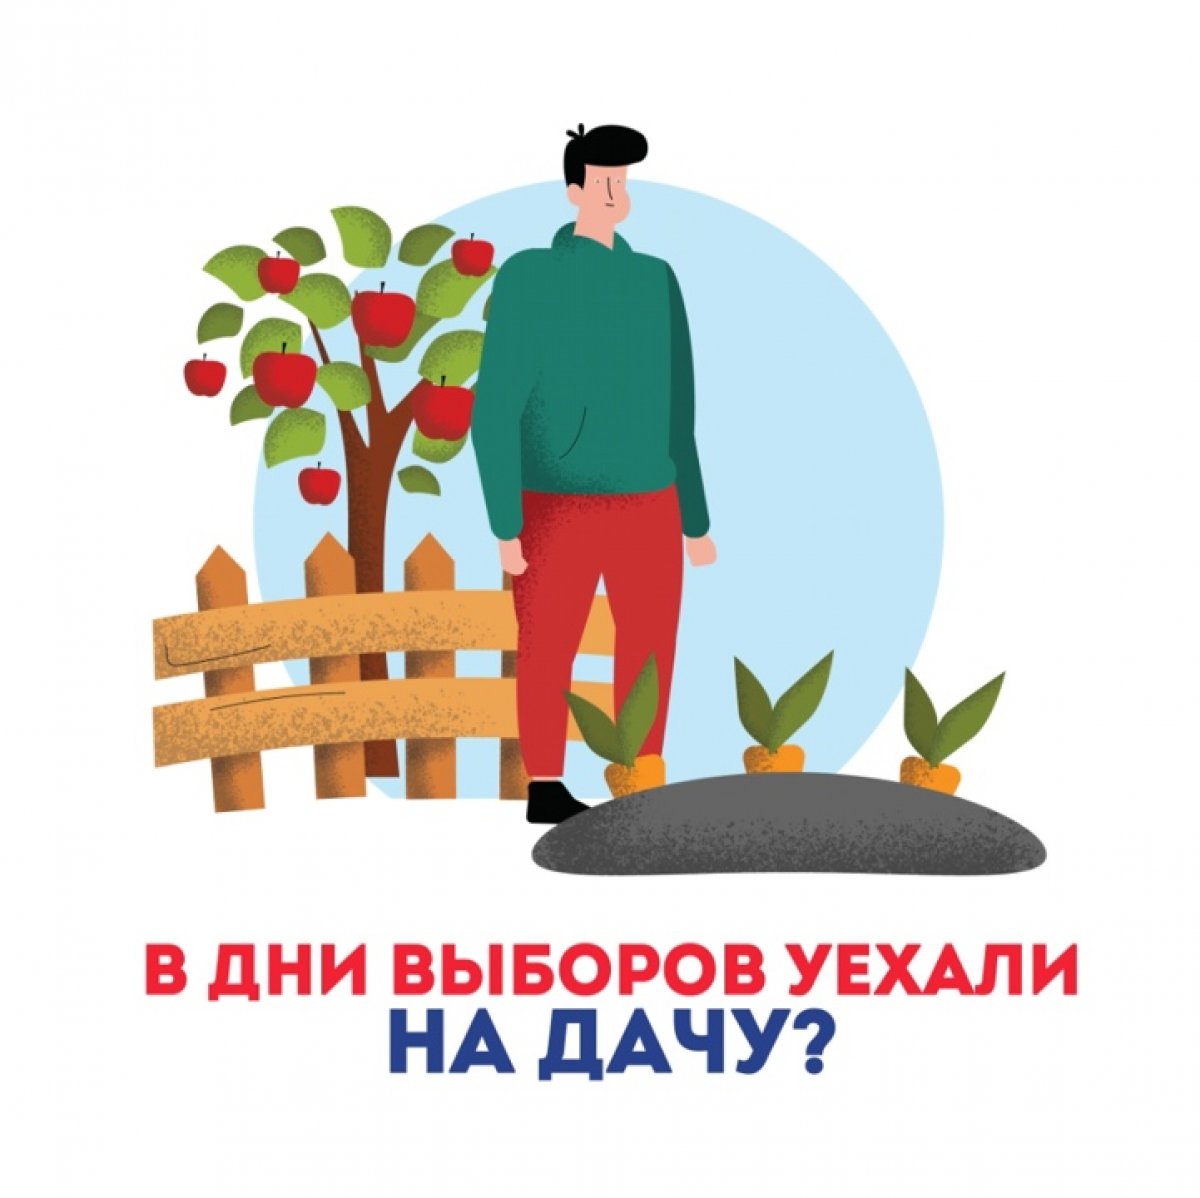 Голосование по выборам губернатора Пермского края будет проходить в течение трёх дней - 11, 12 и 13 сентября с 8:00 до 20:00. И если Вы в этот день будете вдалеке от места регистрации, то Вы всё равно сможете проголосовать.